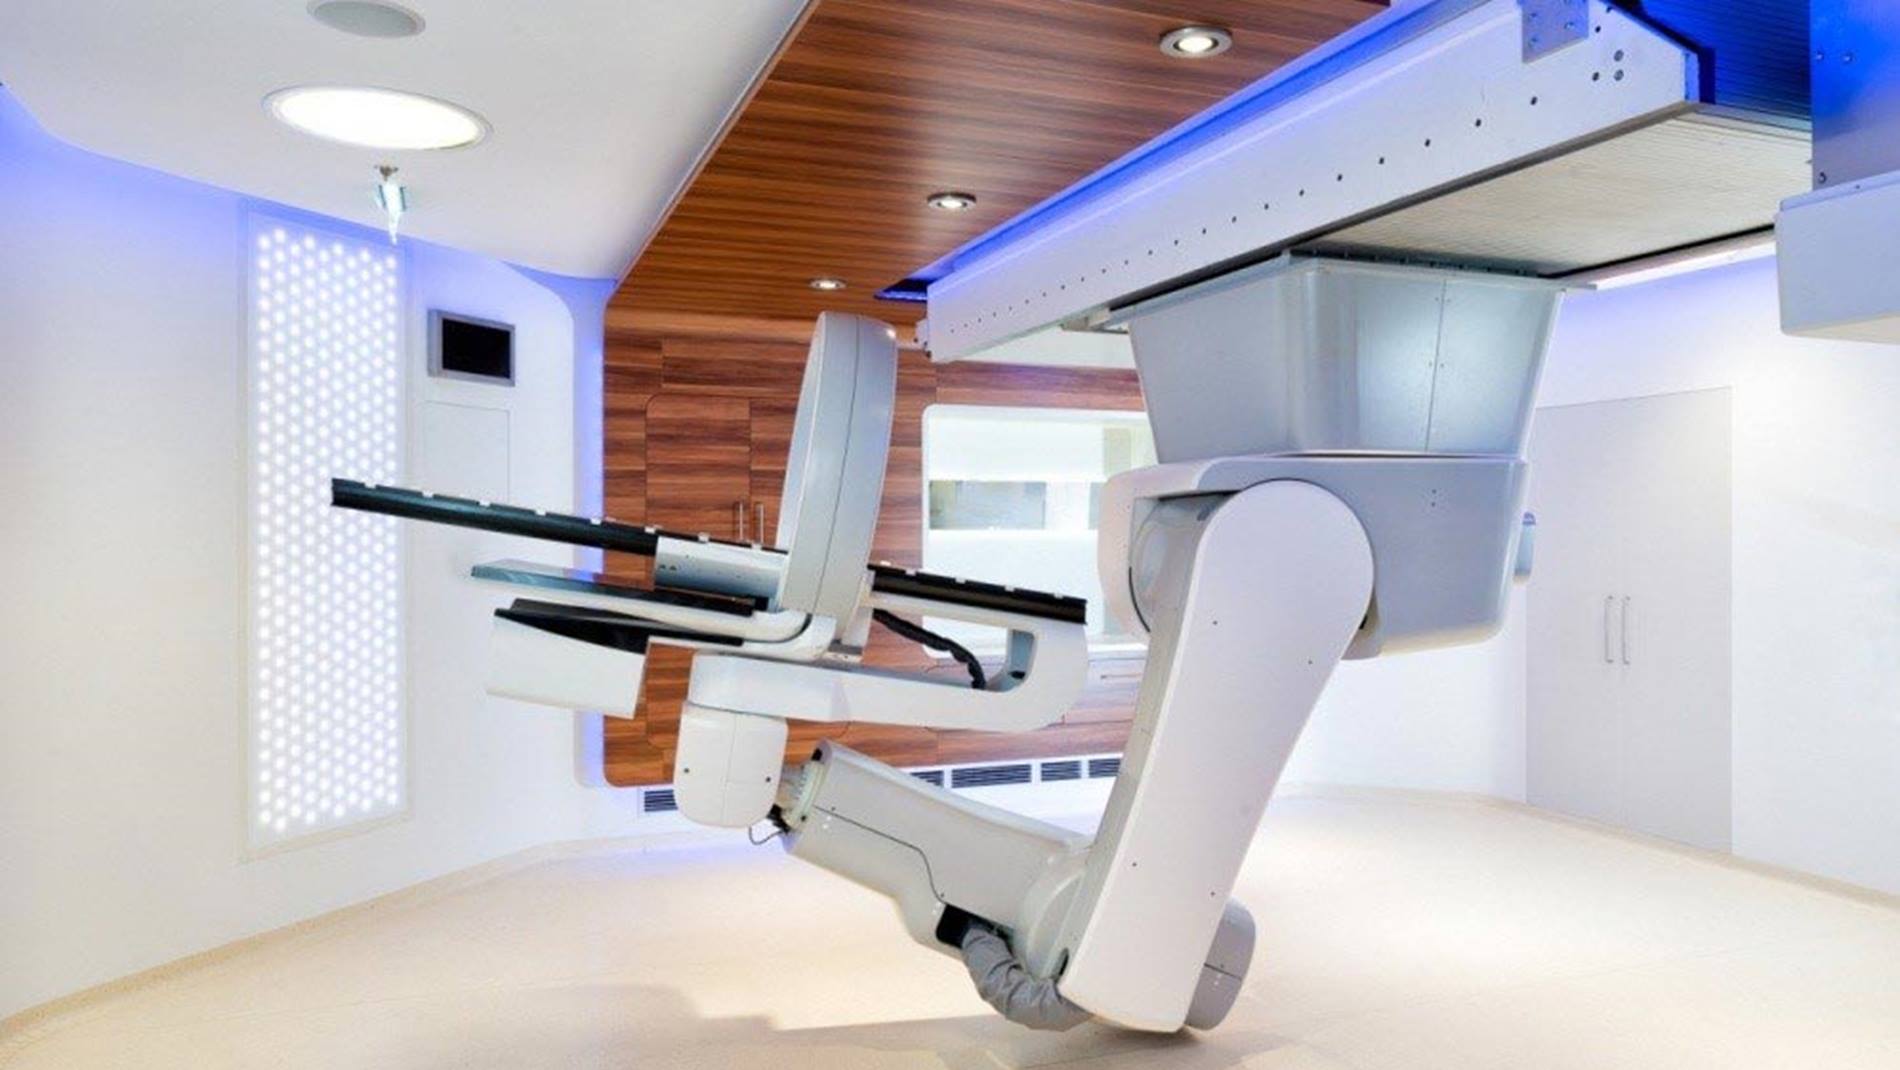 Durch die Deckenmontage des roboterbasierten Patientenpositioniersystems von BEC kann der Platz im Behandlungsraum bei MedAustron optimal genutzt werden.